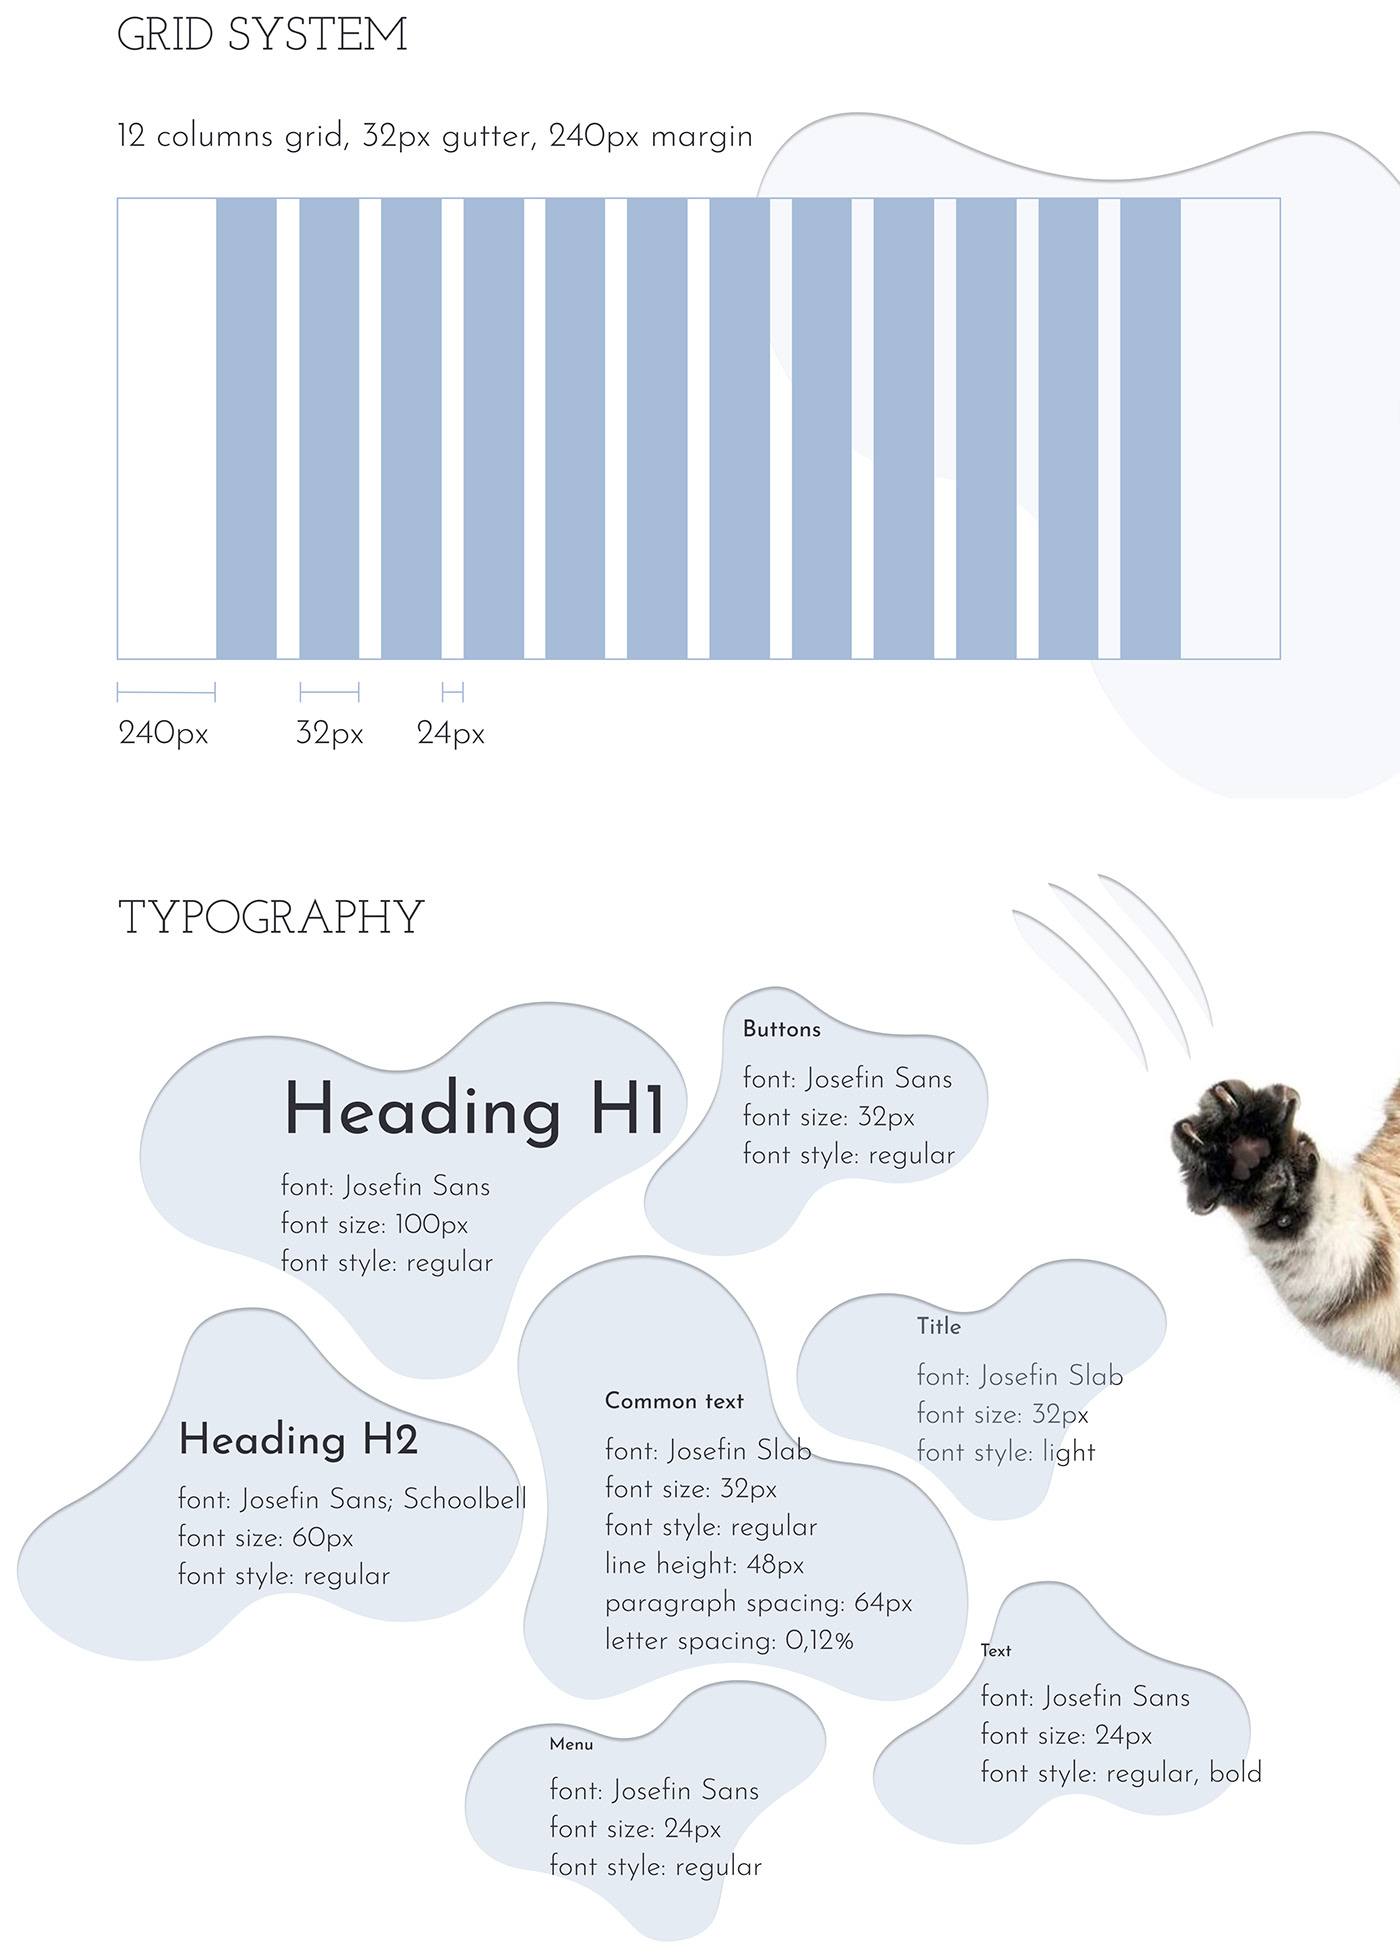 animal UI/UX ui design redesign redesign website Web Design  Cat